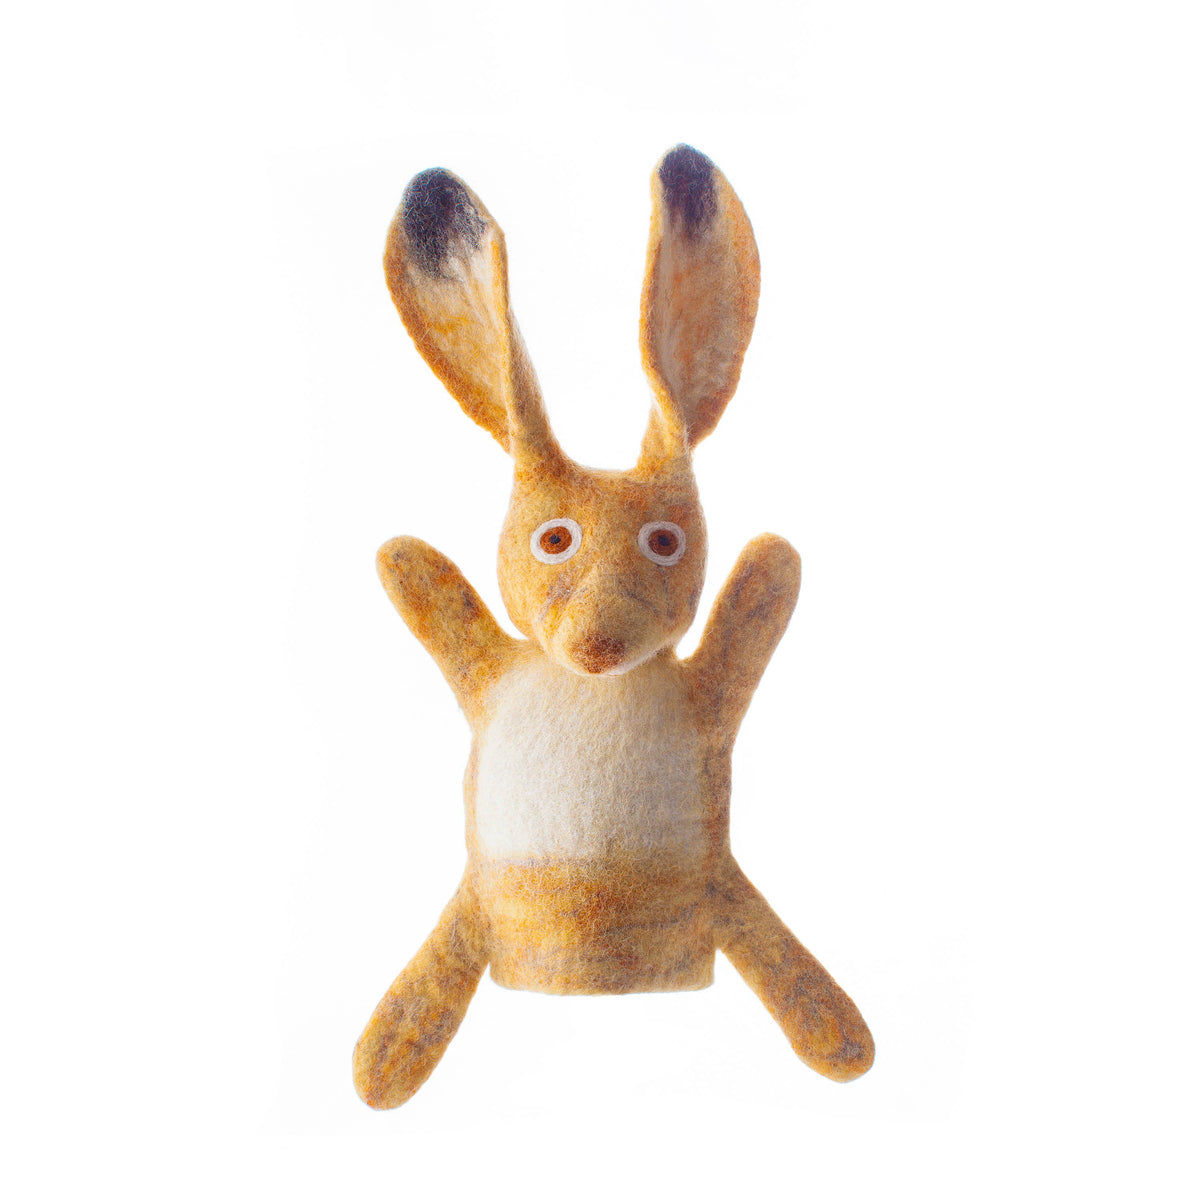 Hand Puppet | Hartley Hare Hand | Sew Heart Felt